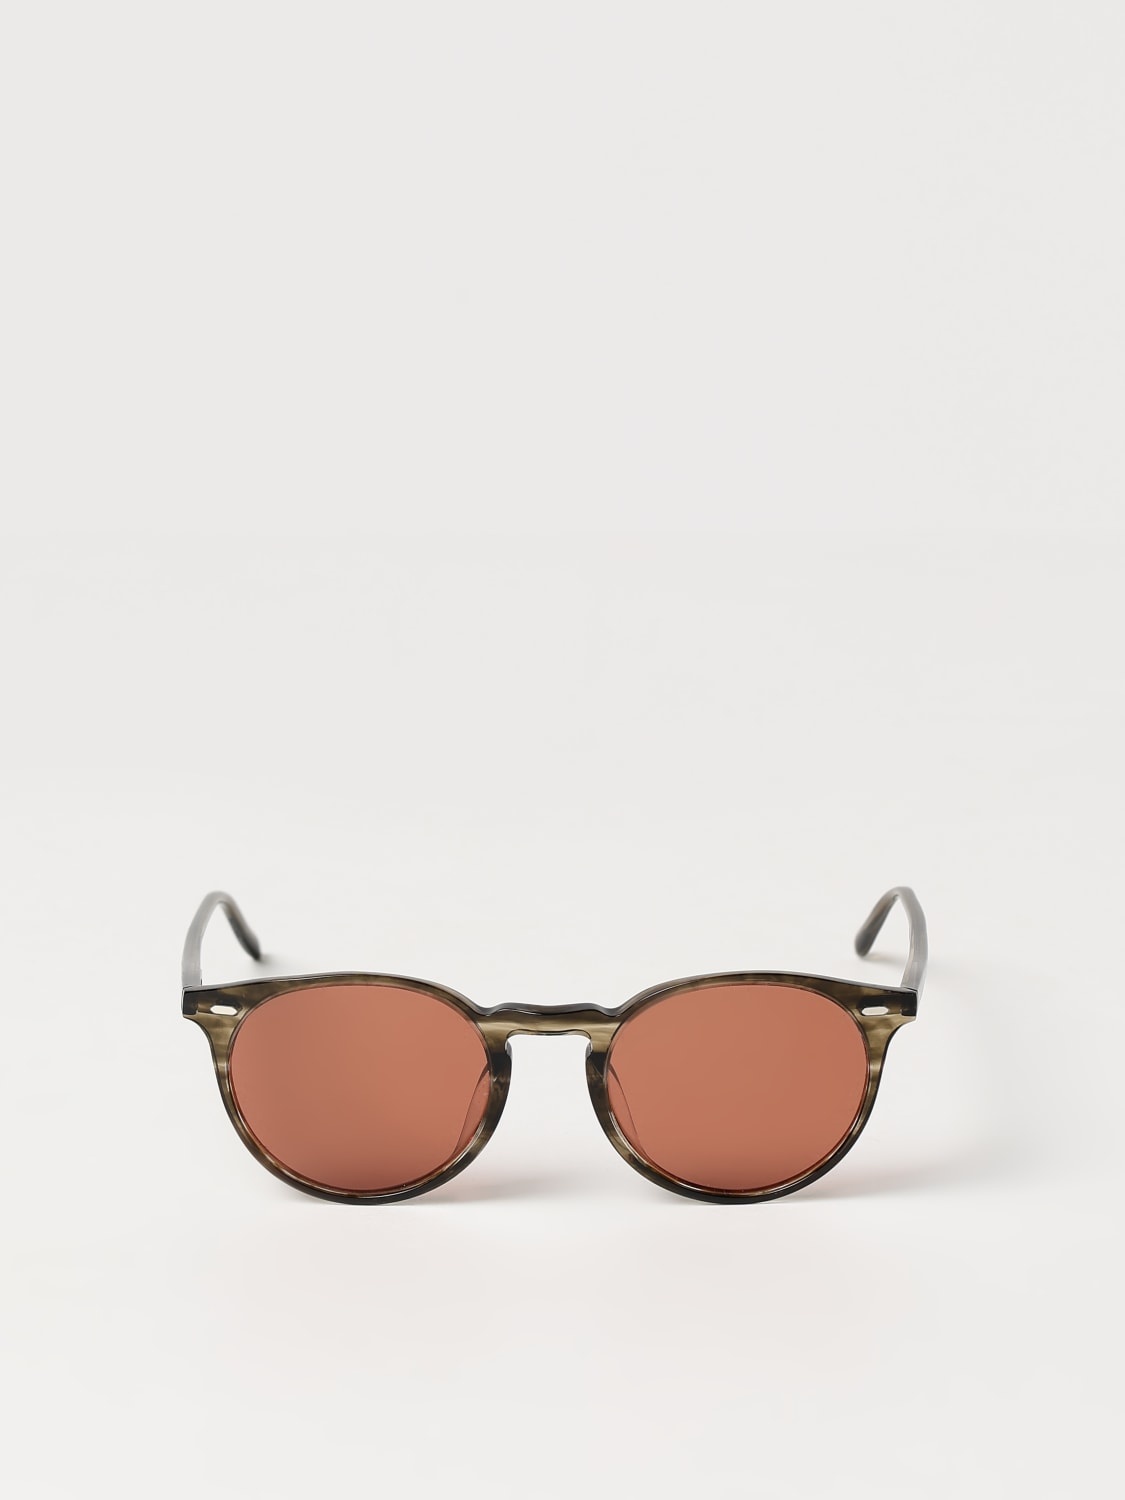 Sunglasses men Oliver Peoples - 3